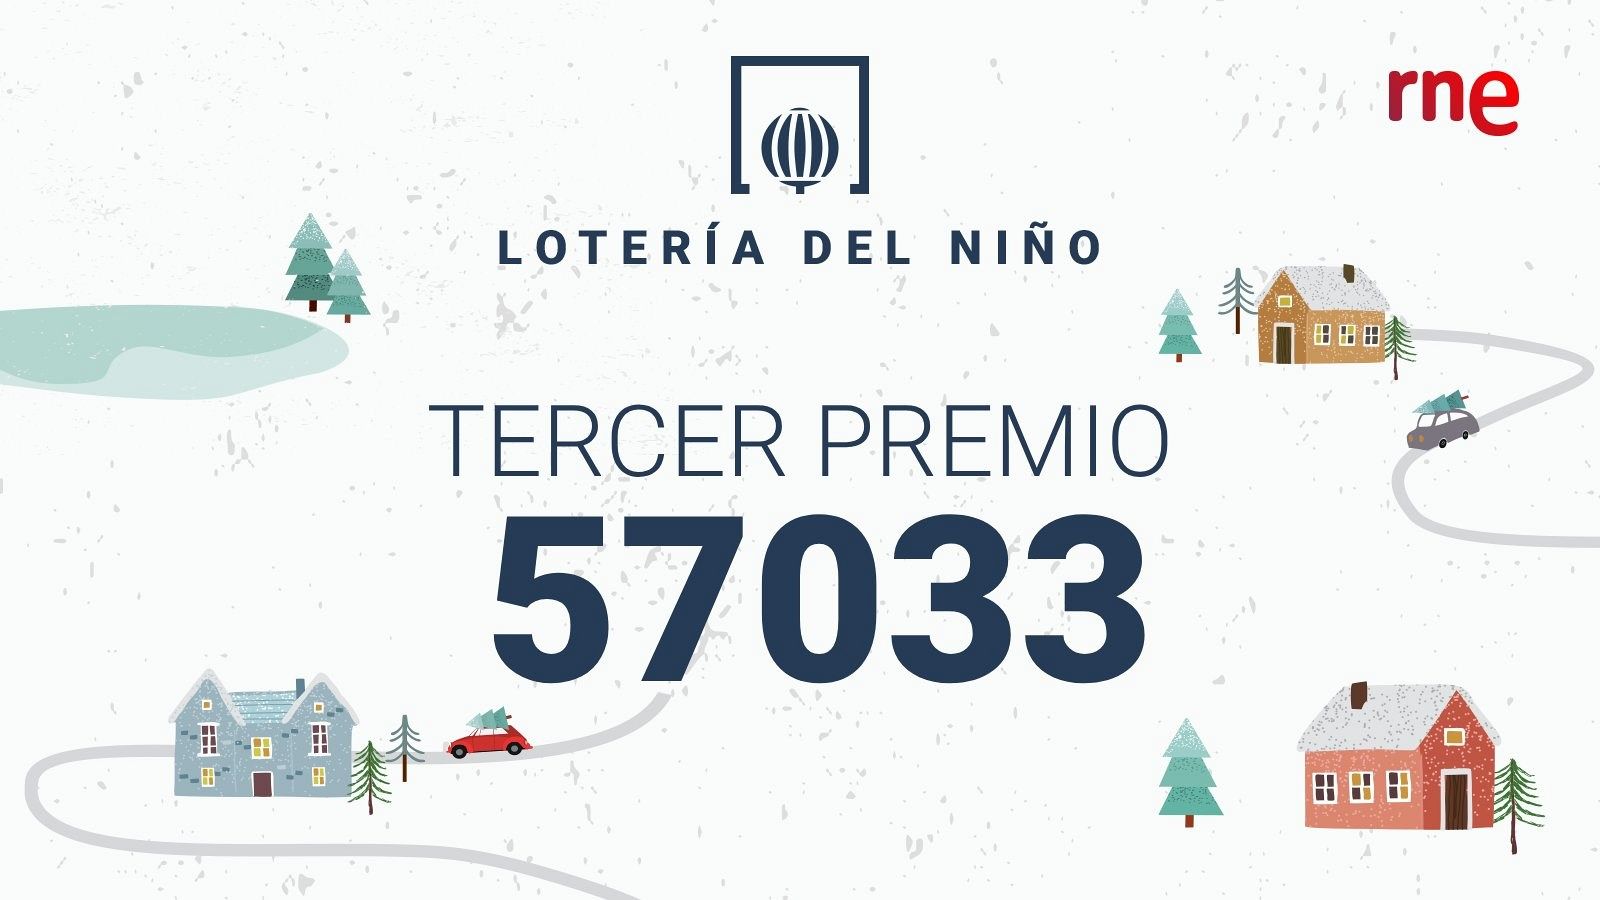 El tercer premi, el 57033 ha tocat a Tàrrega, a Lleida, que ha venut una sèrie